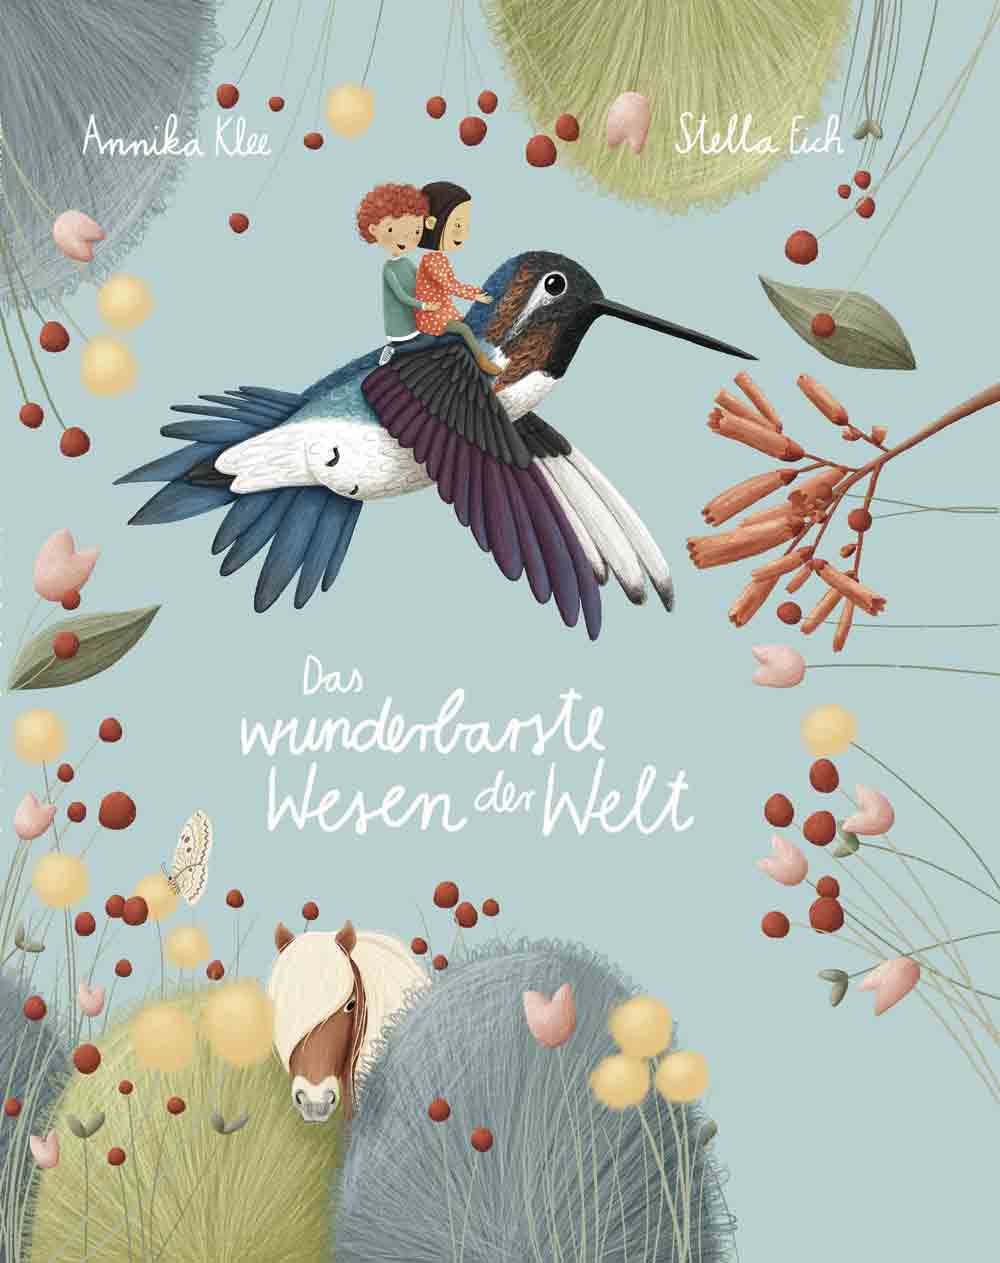 Das wunderbarste Wesen der Welt im Final des Deutschen Kinderbuchpreises, Top 10 Finalisten